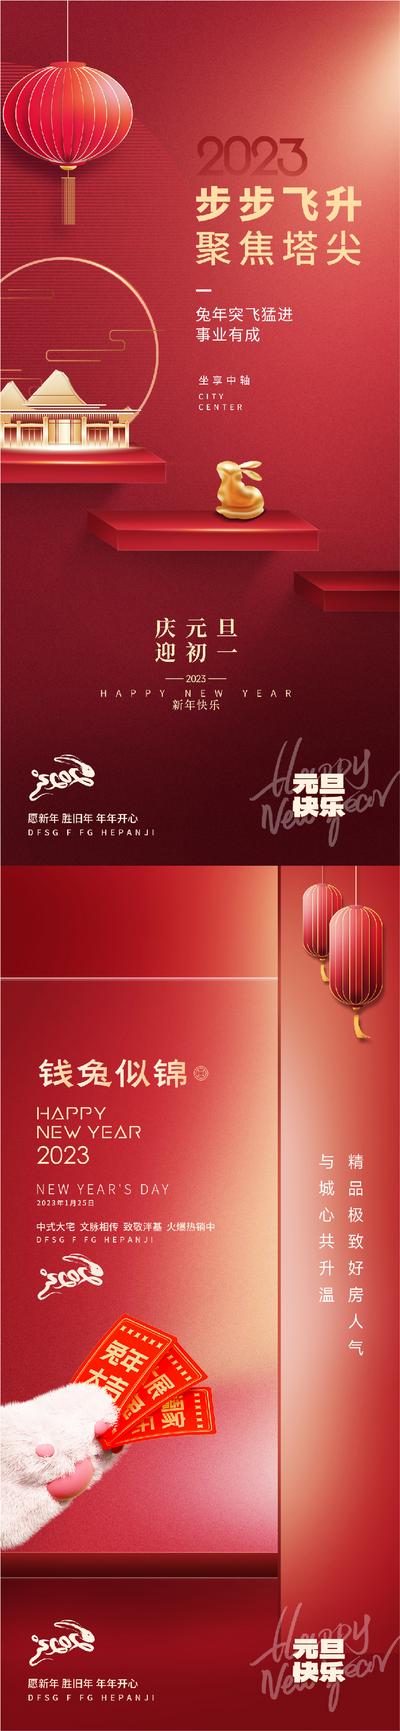 南门网 海报 公历节日 元旦 中国传统节日 春节 卡通 红包 利是封 兔年 兔子 爪子